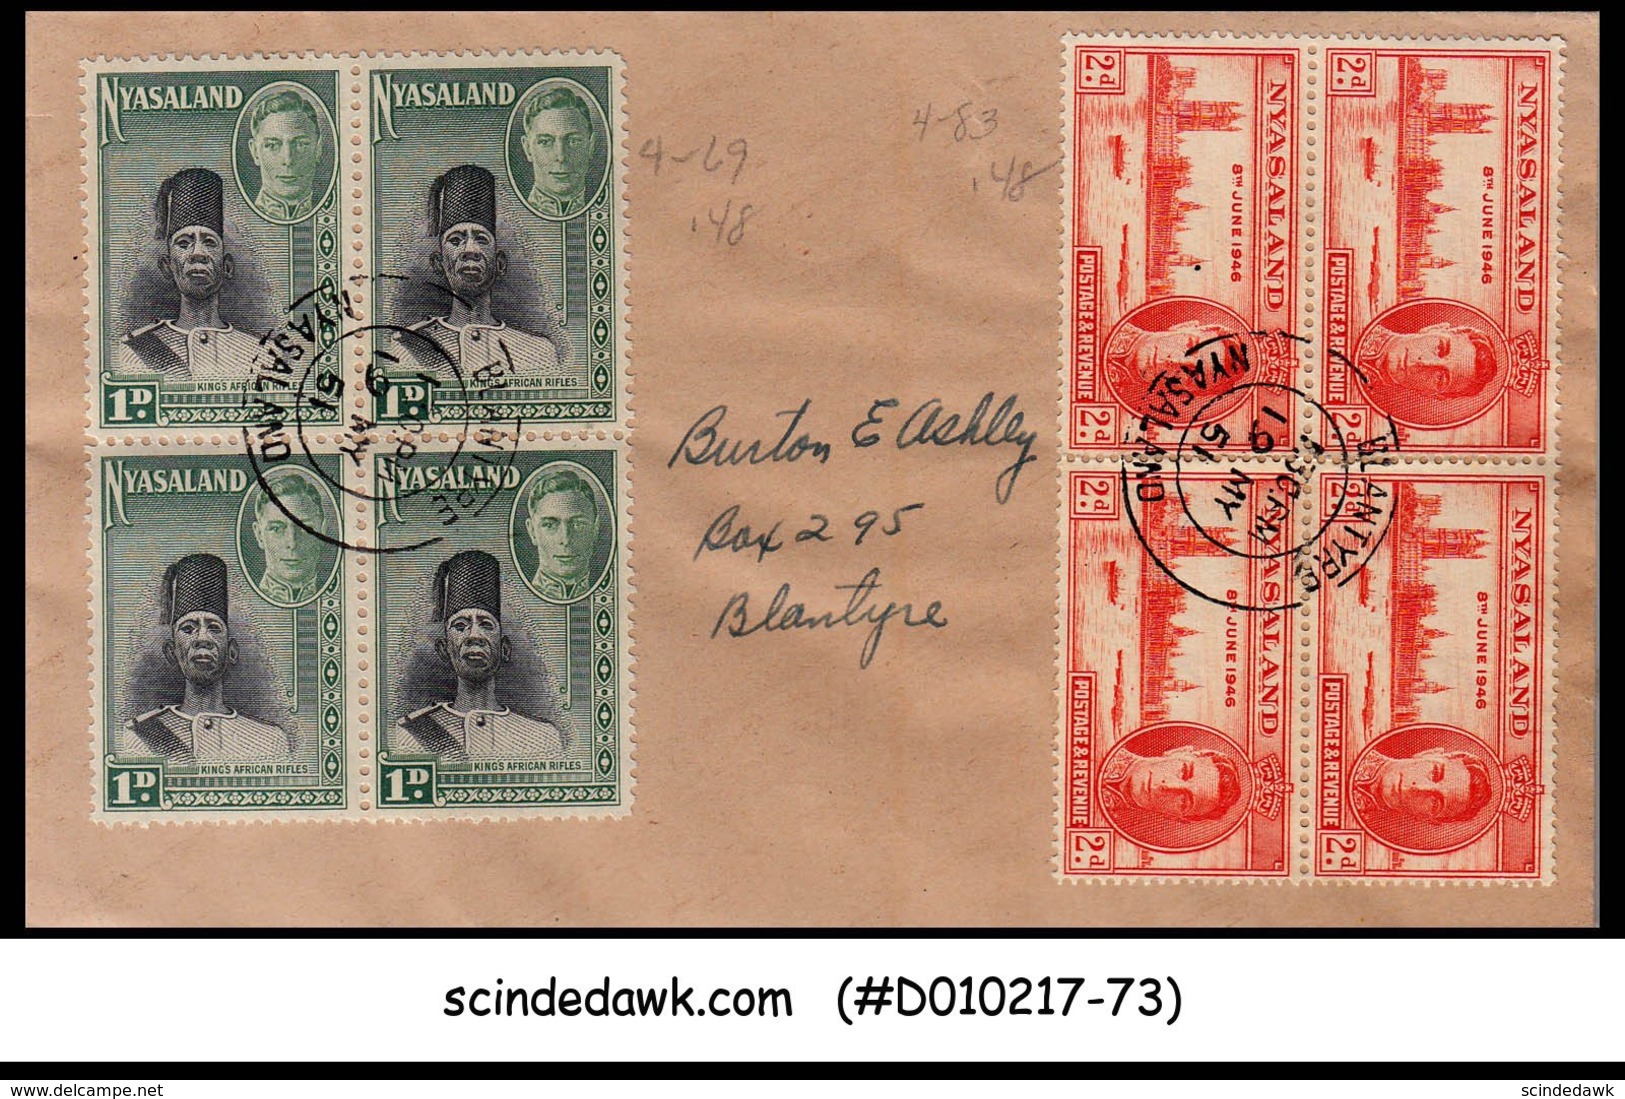 NYASALAND - 1951 Envelope To Blantyre With 8-KGVI Stamps - Nyassaland (1907-1953)